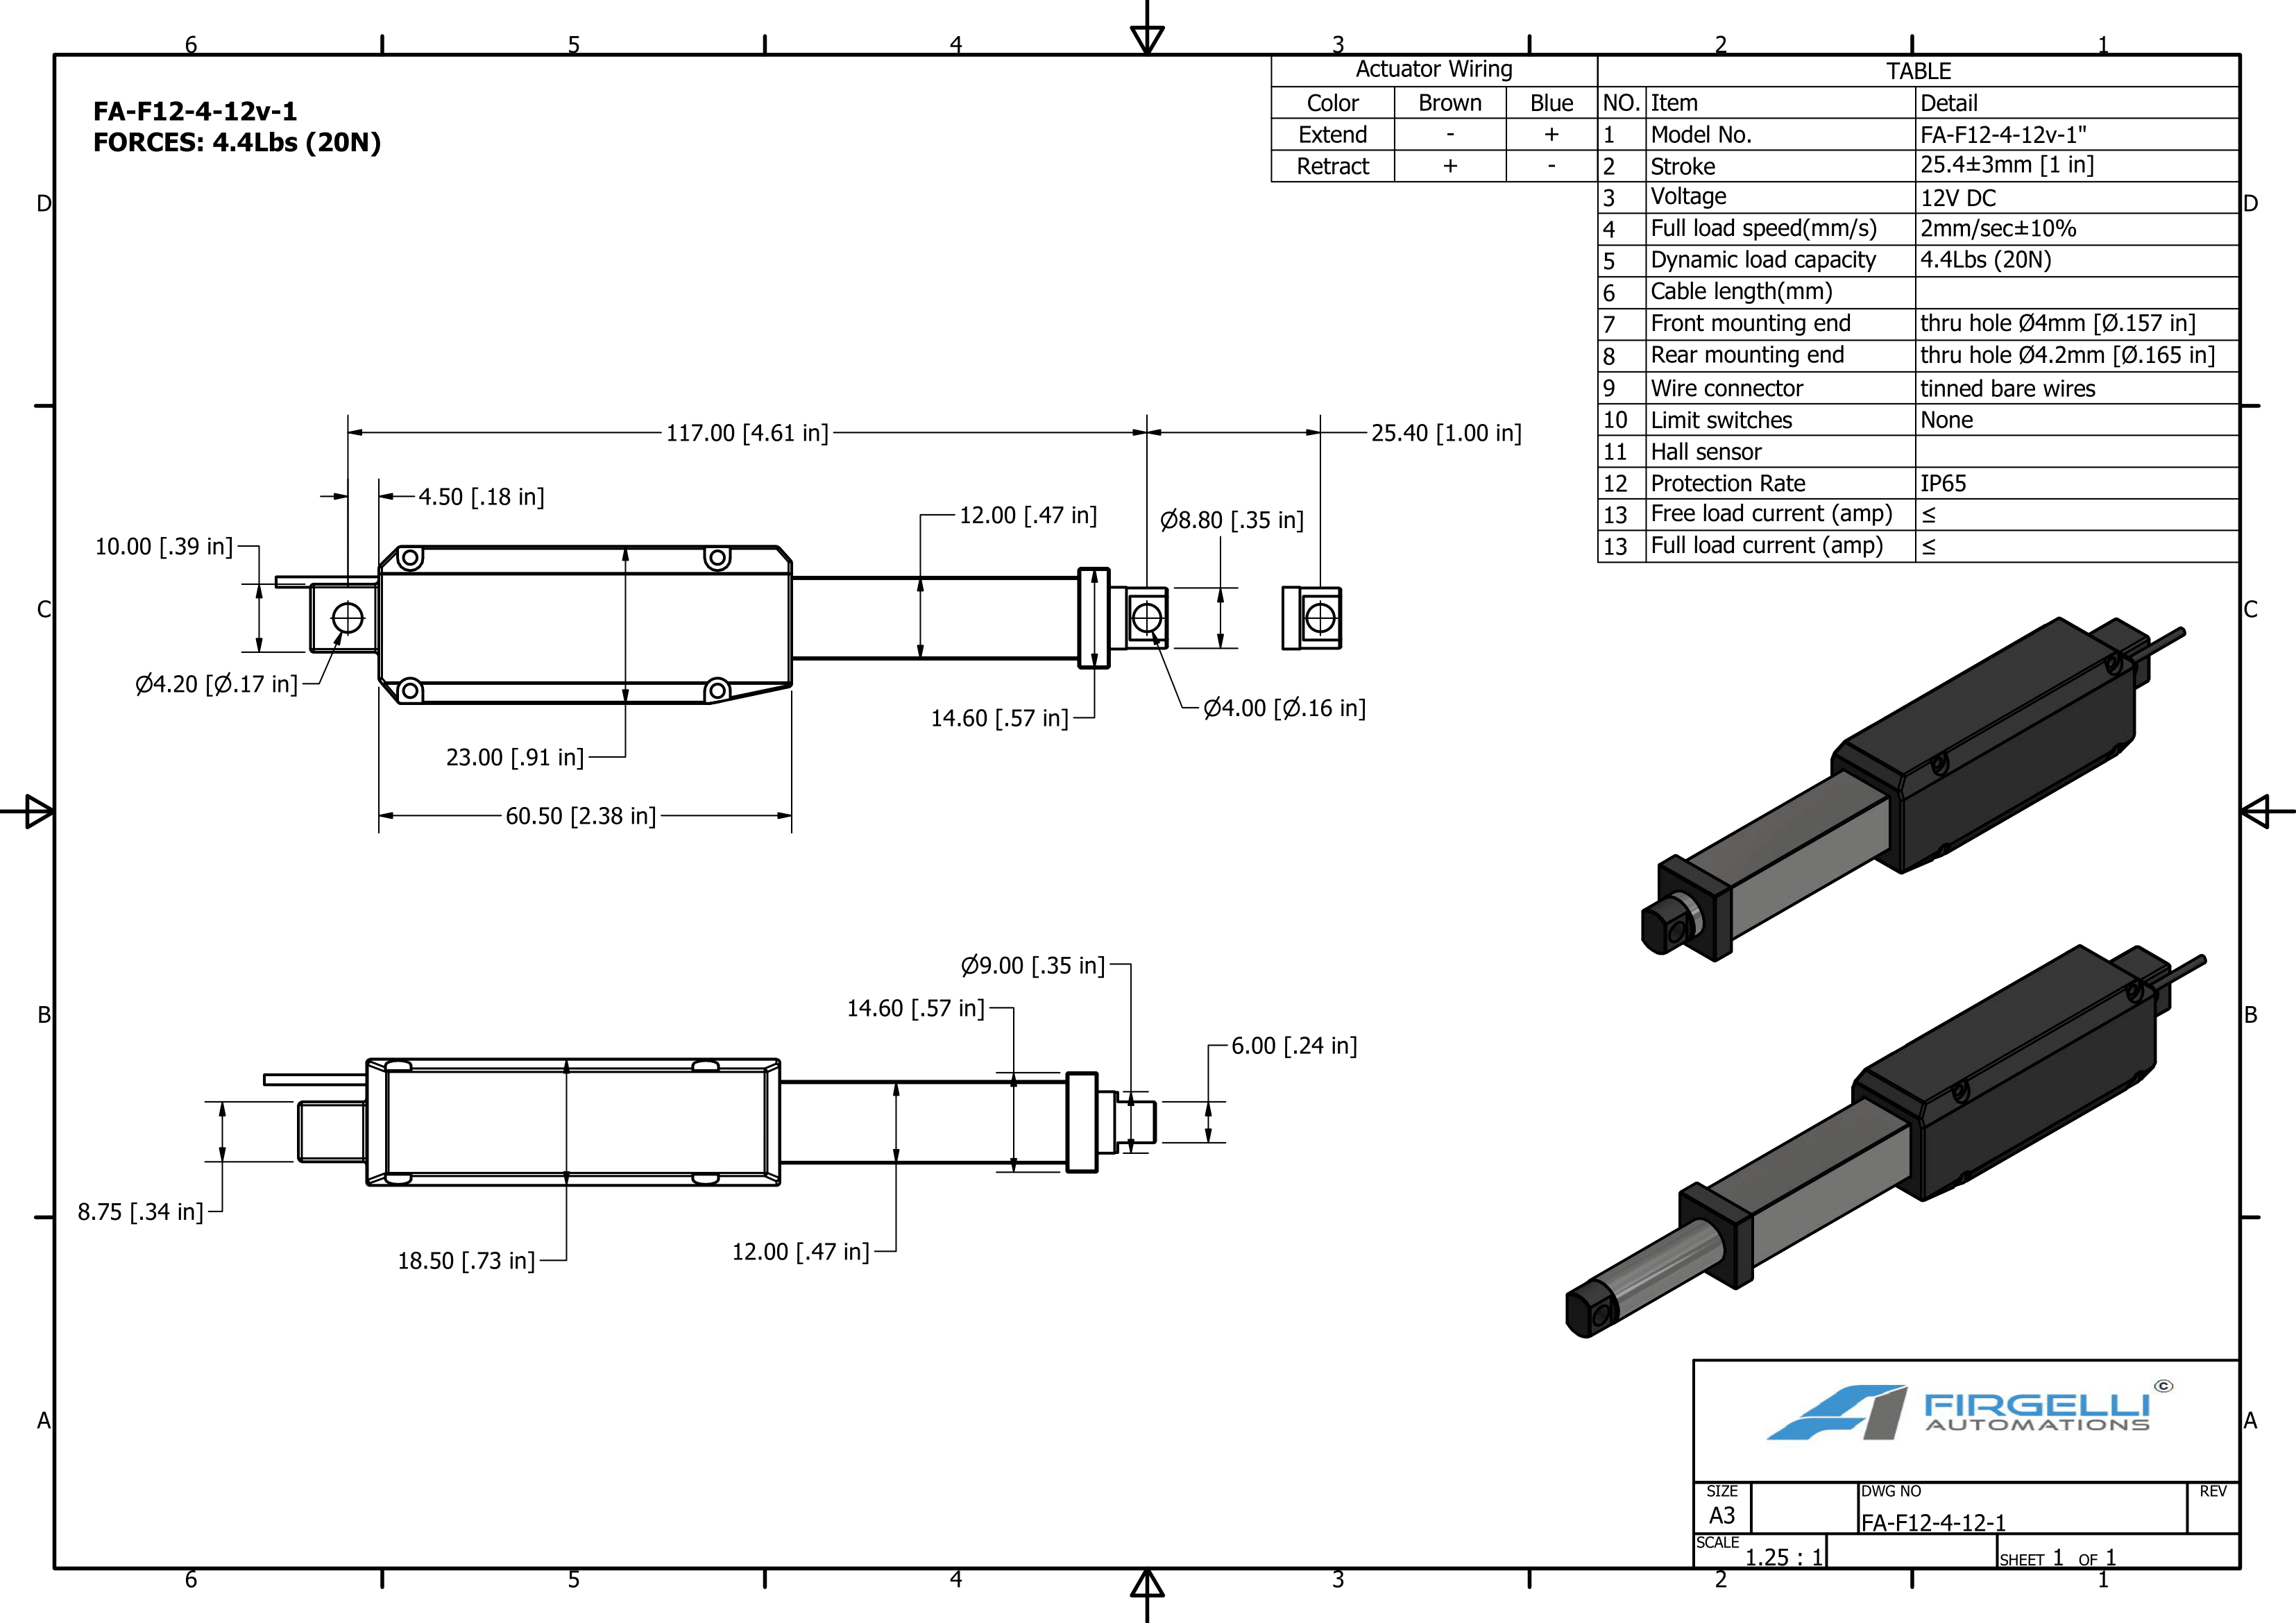 Dimensões do atuador micro linear F12 com um golpe de 1 polegada